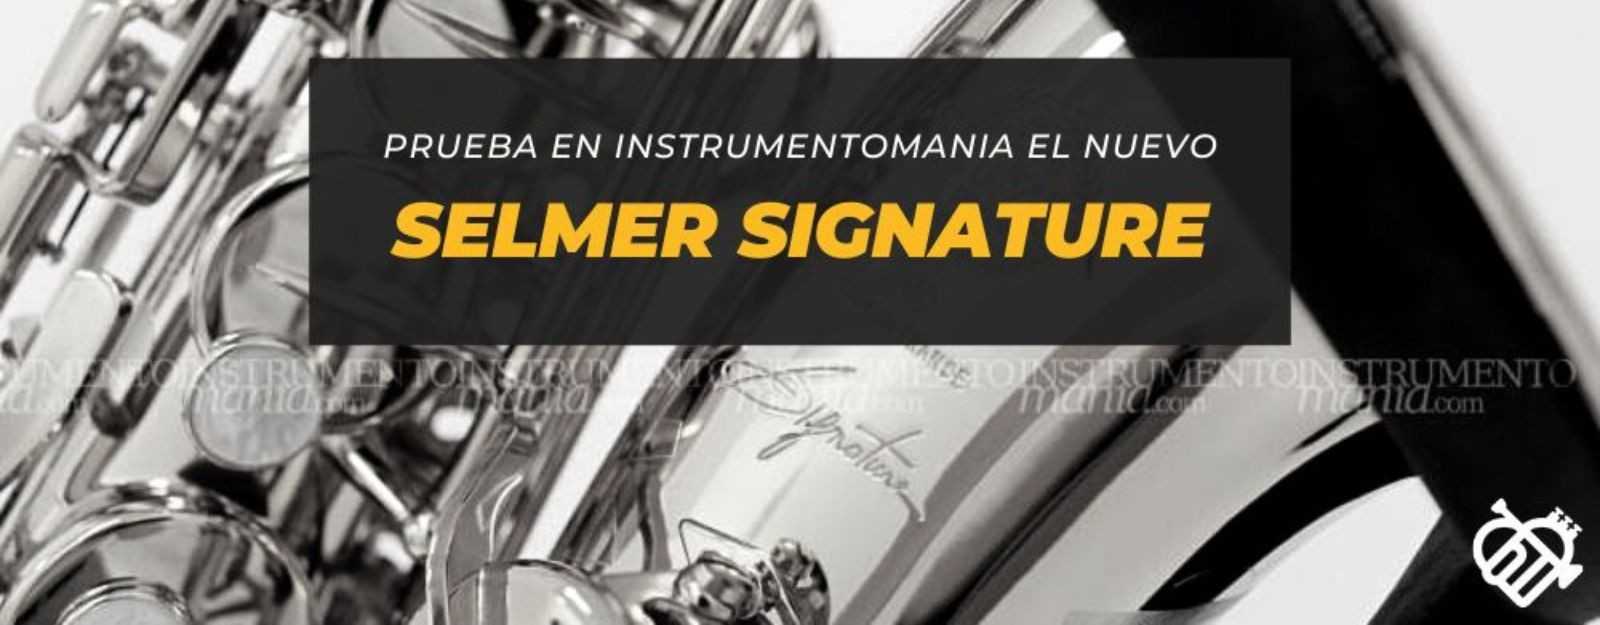 Ven a probar el nuevo saxofón alto Selmer Signature en Instrumentomania